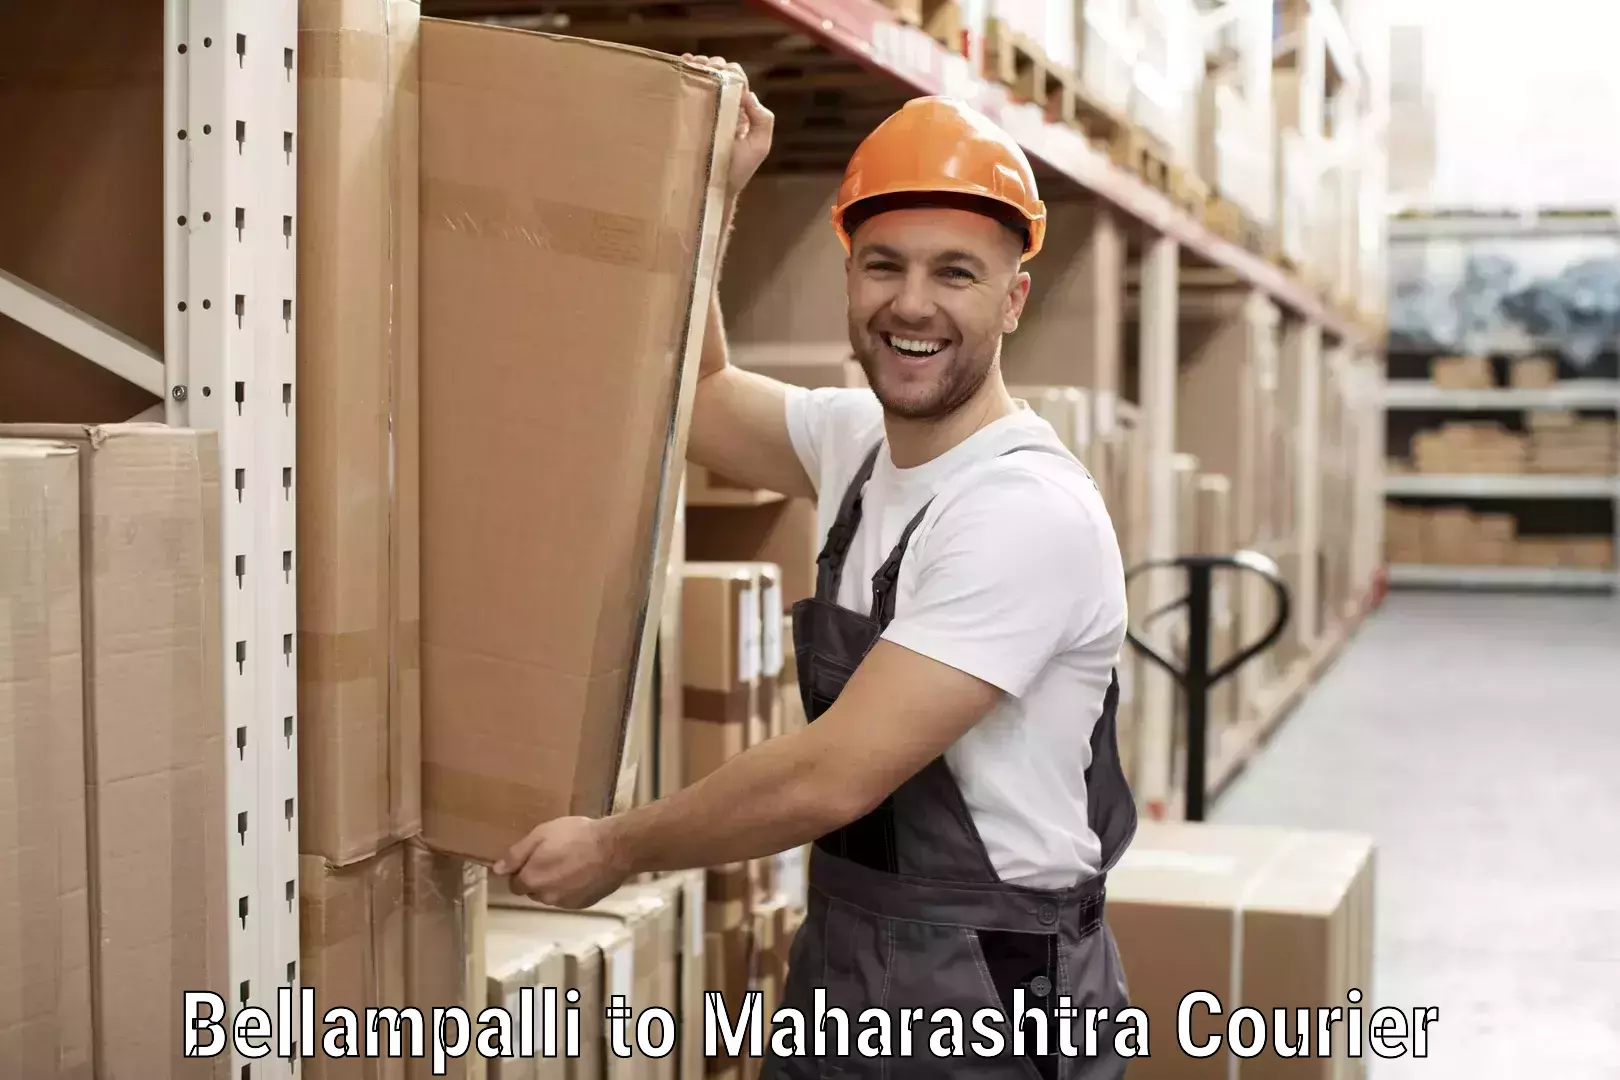 E-commerce logistics support Bellampalli to Nandurbar